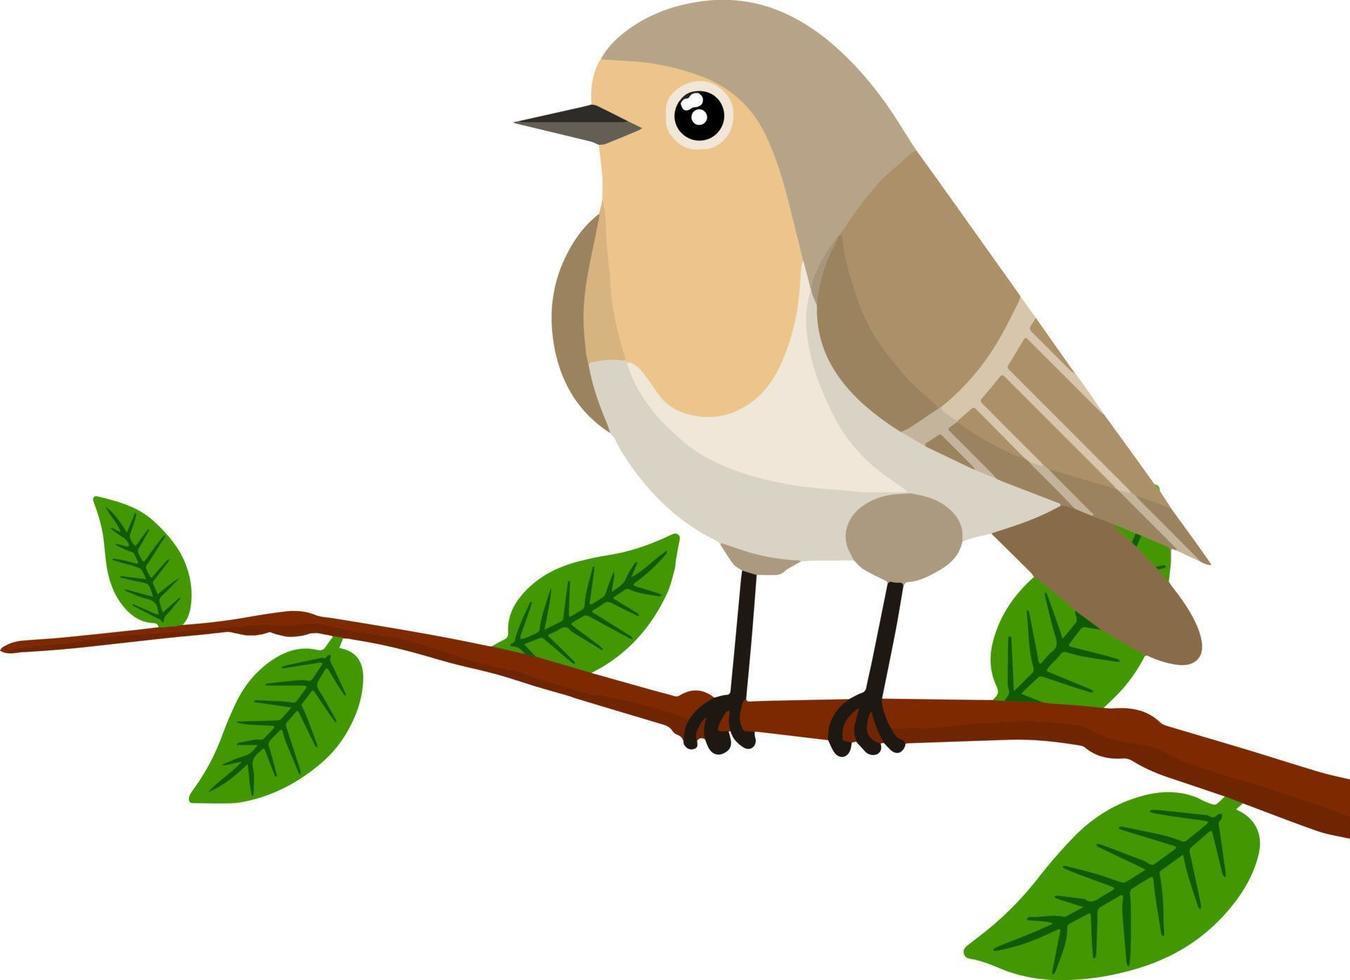 pájaro gris del bosque sentado en una rama de árbol. lindo animal con alas y hojas verdes. ilustración para tarjetas de felicitación. ilustración plana de dibujos animados vector